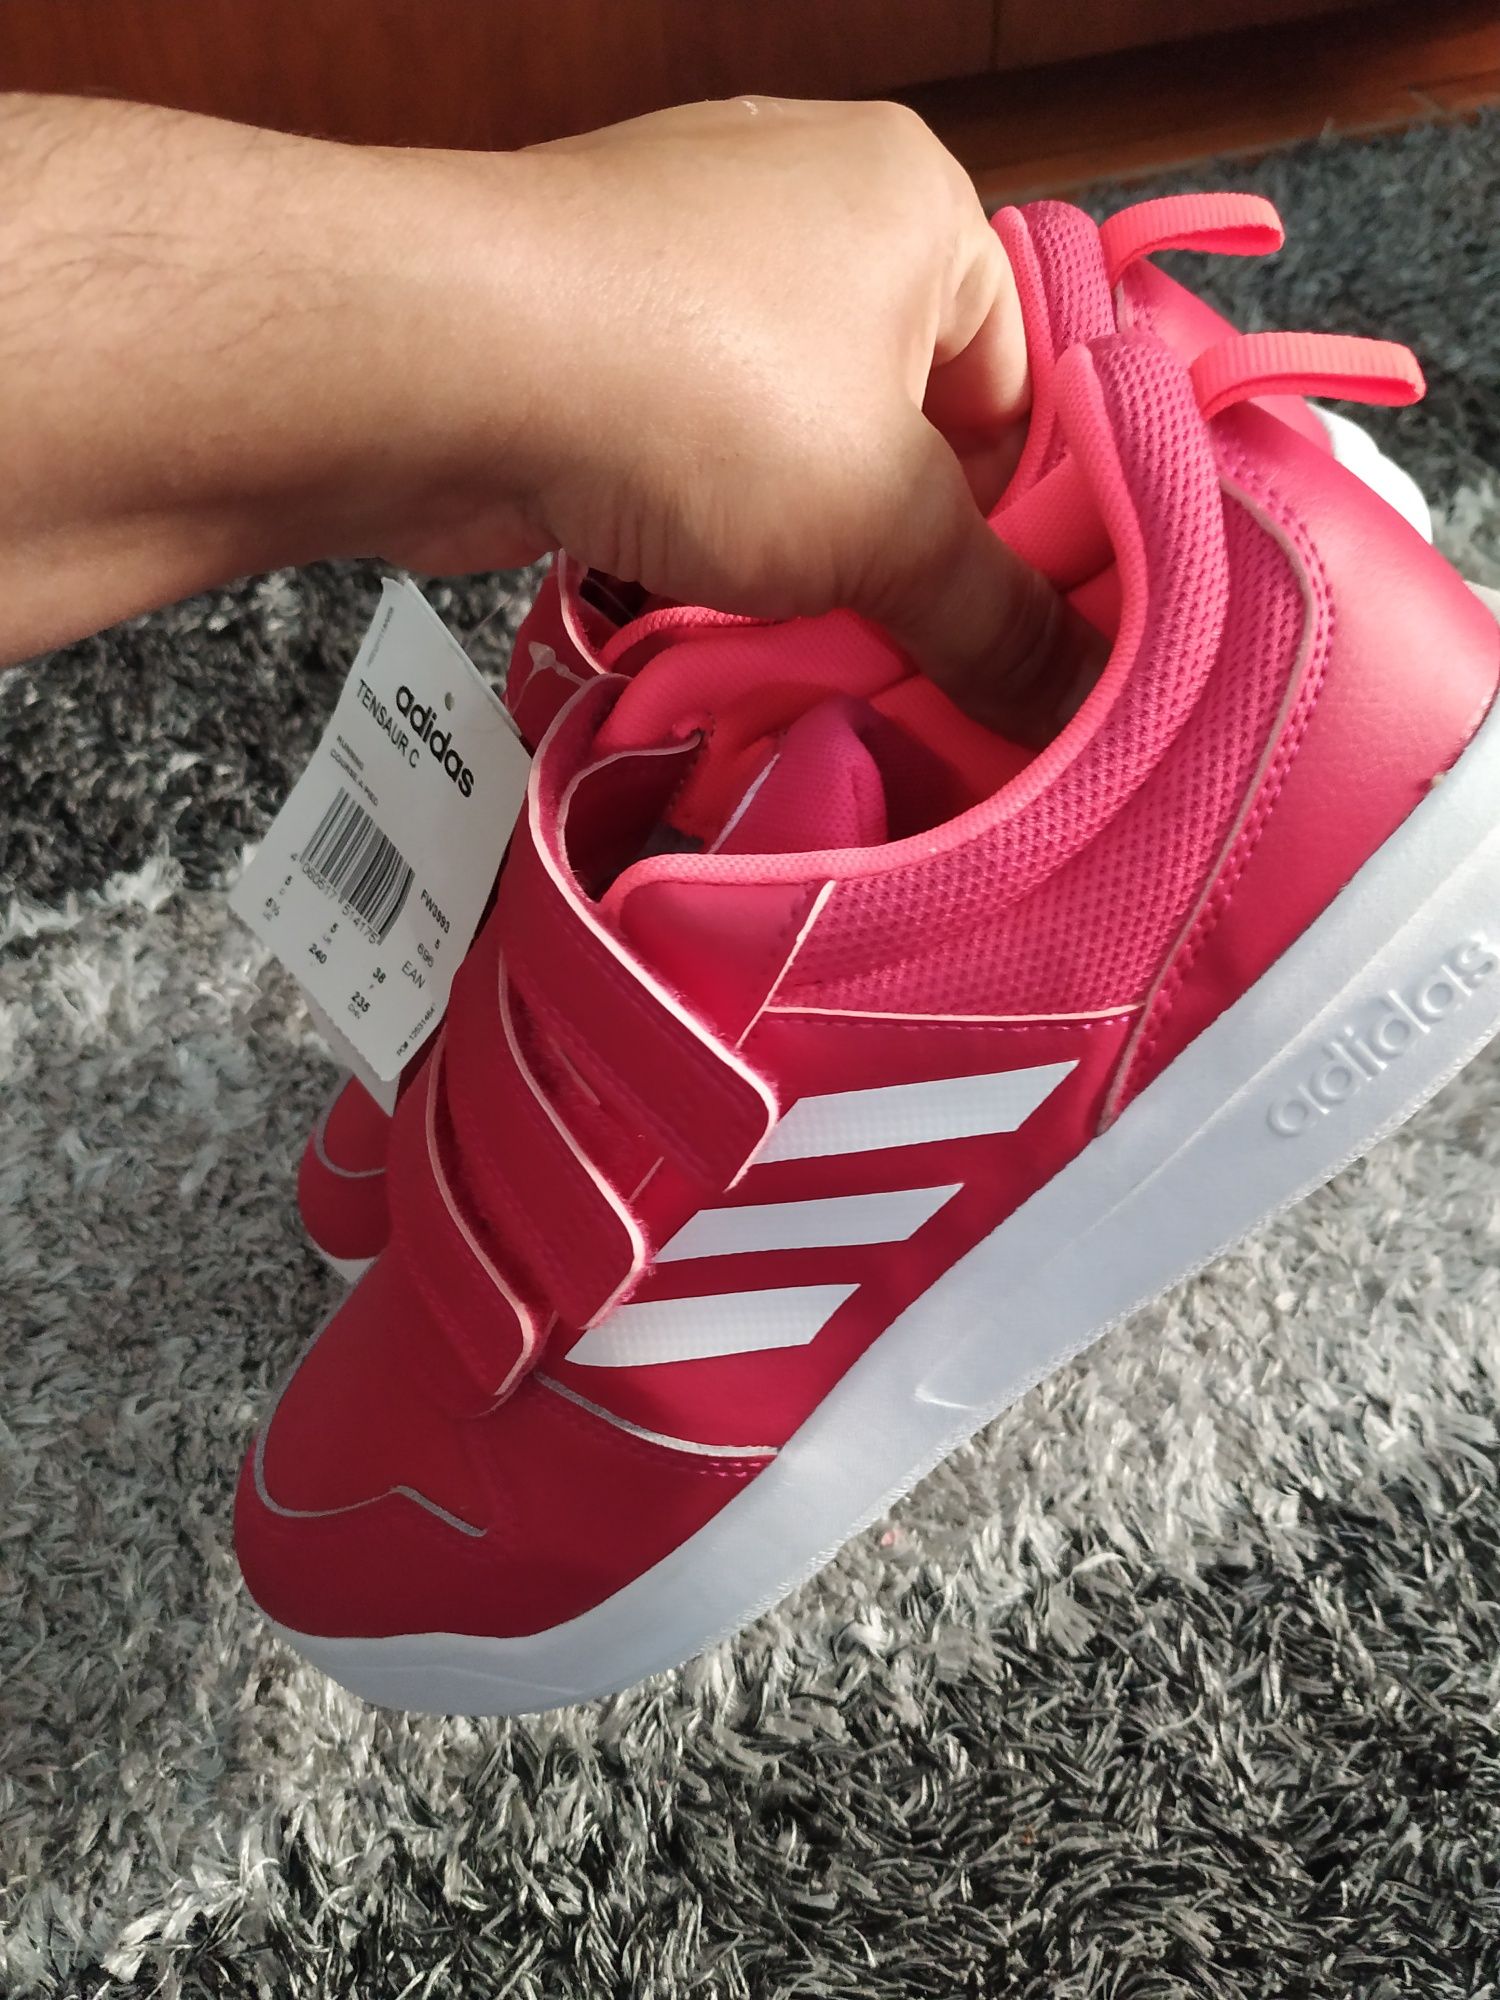 Sapatilhas Adidas novas com etiqueta cor rosa lindas tamanho 38.